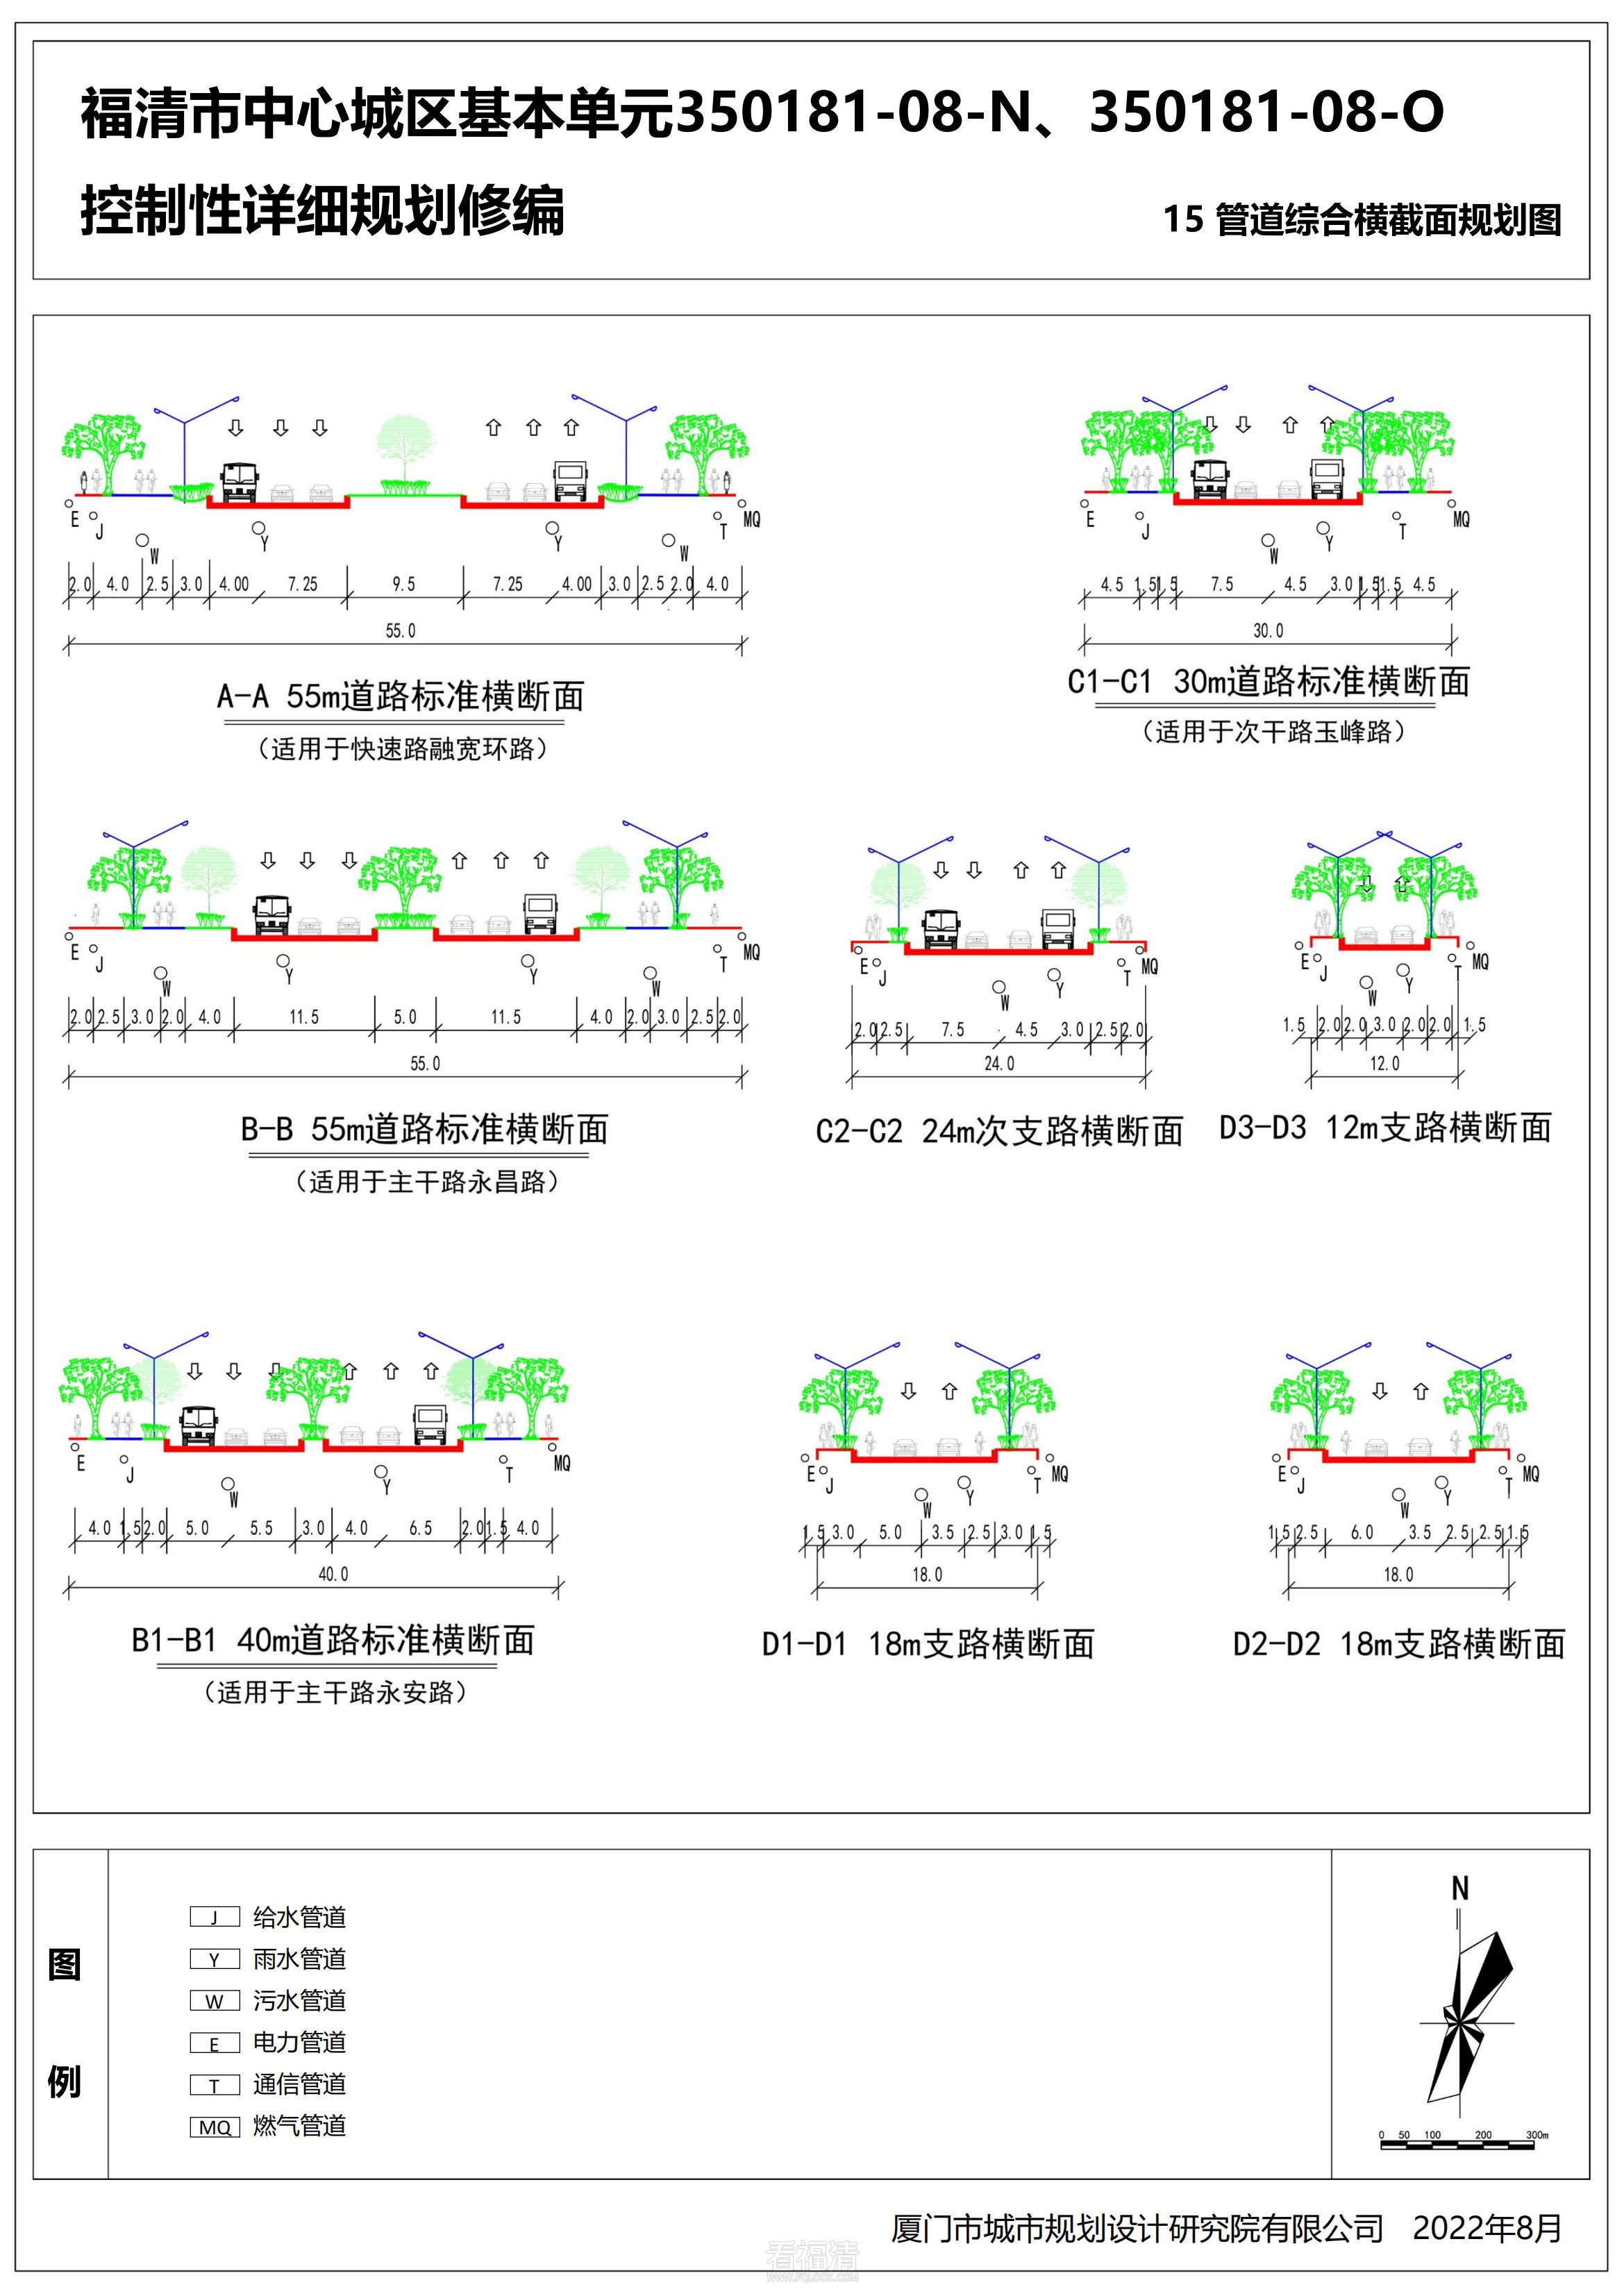 福清市中心城区基本单元350181-08-N、350181-08-O控制性详细规划修编_38.jpg